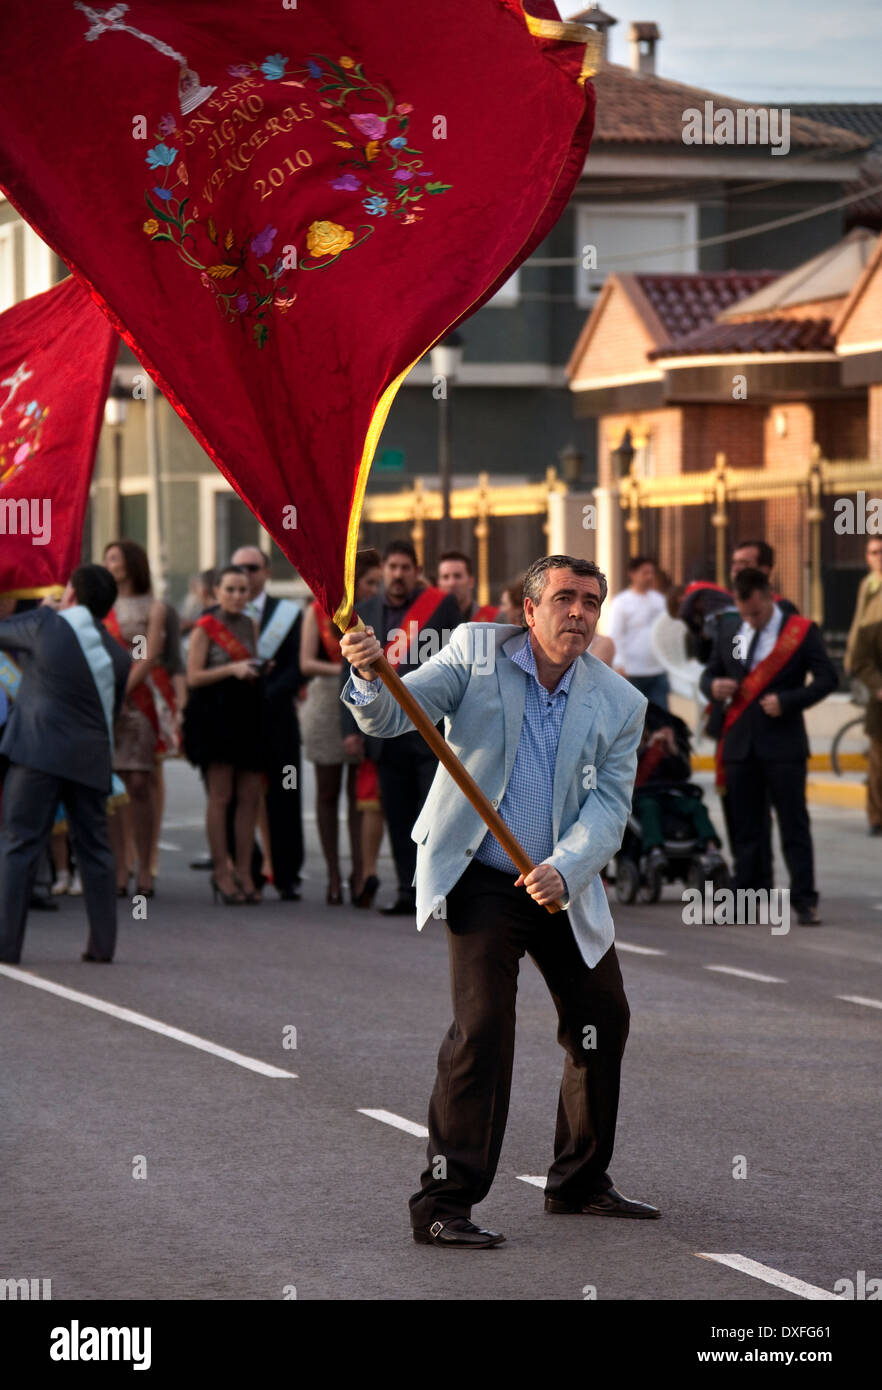 Homme de la région de brandir le drapeau à la Fiesta de la Santisima Cruz - Costa del Sol Espagne Région de spouthern Banque D'Images